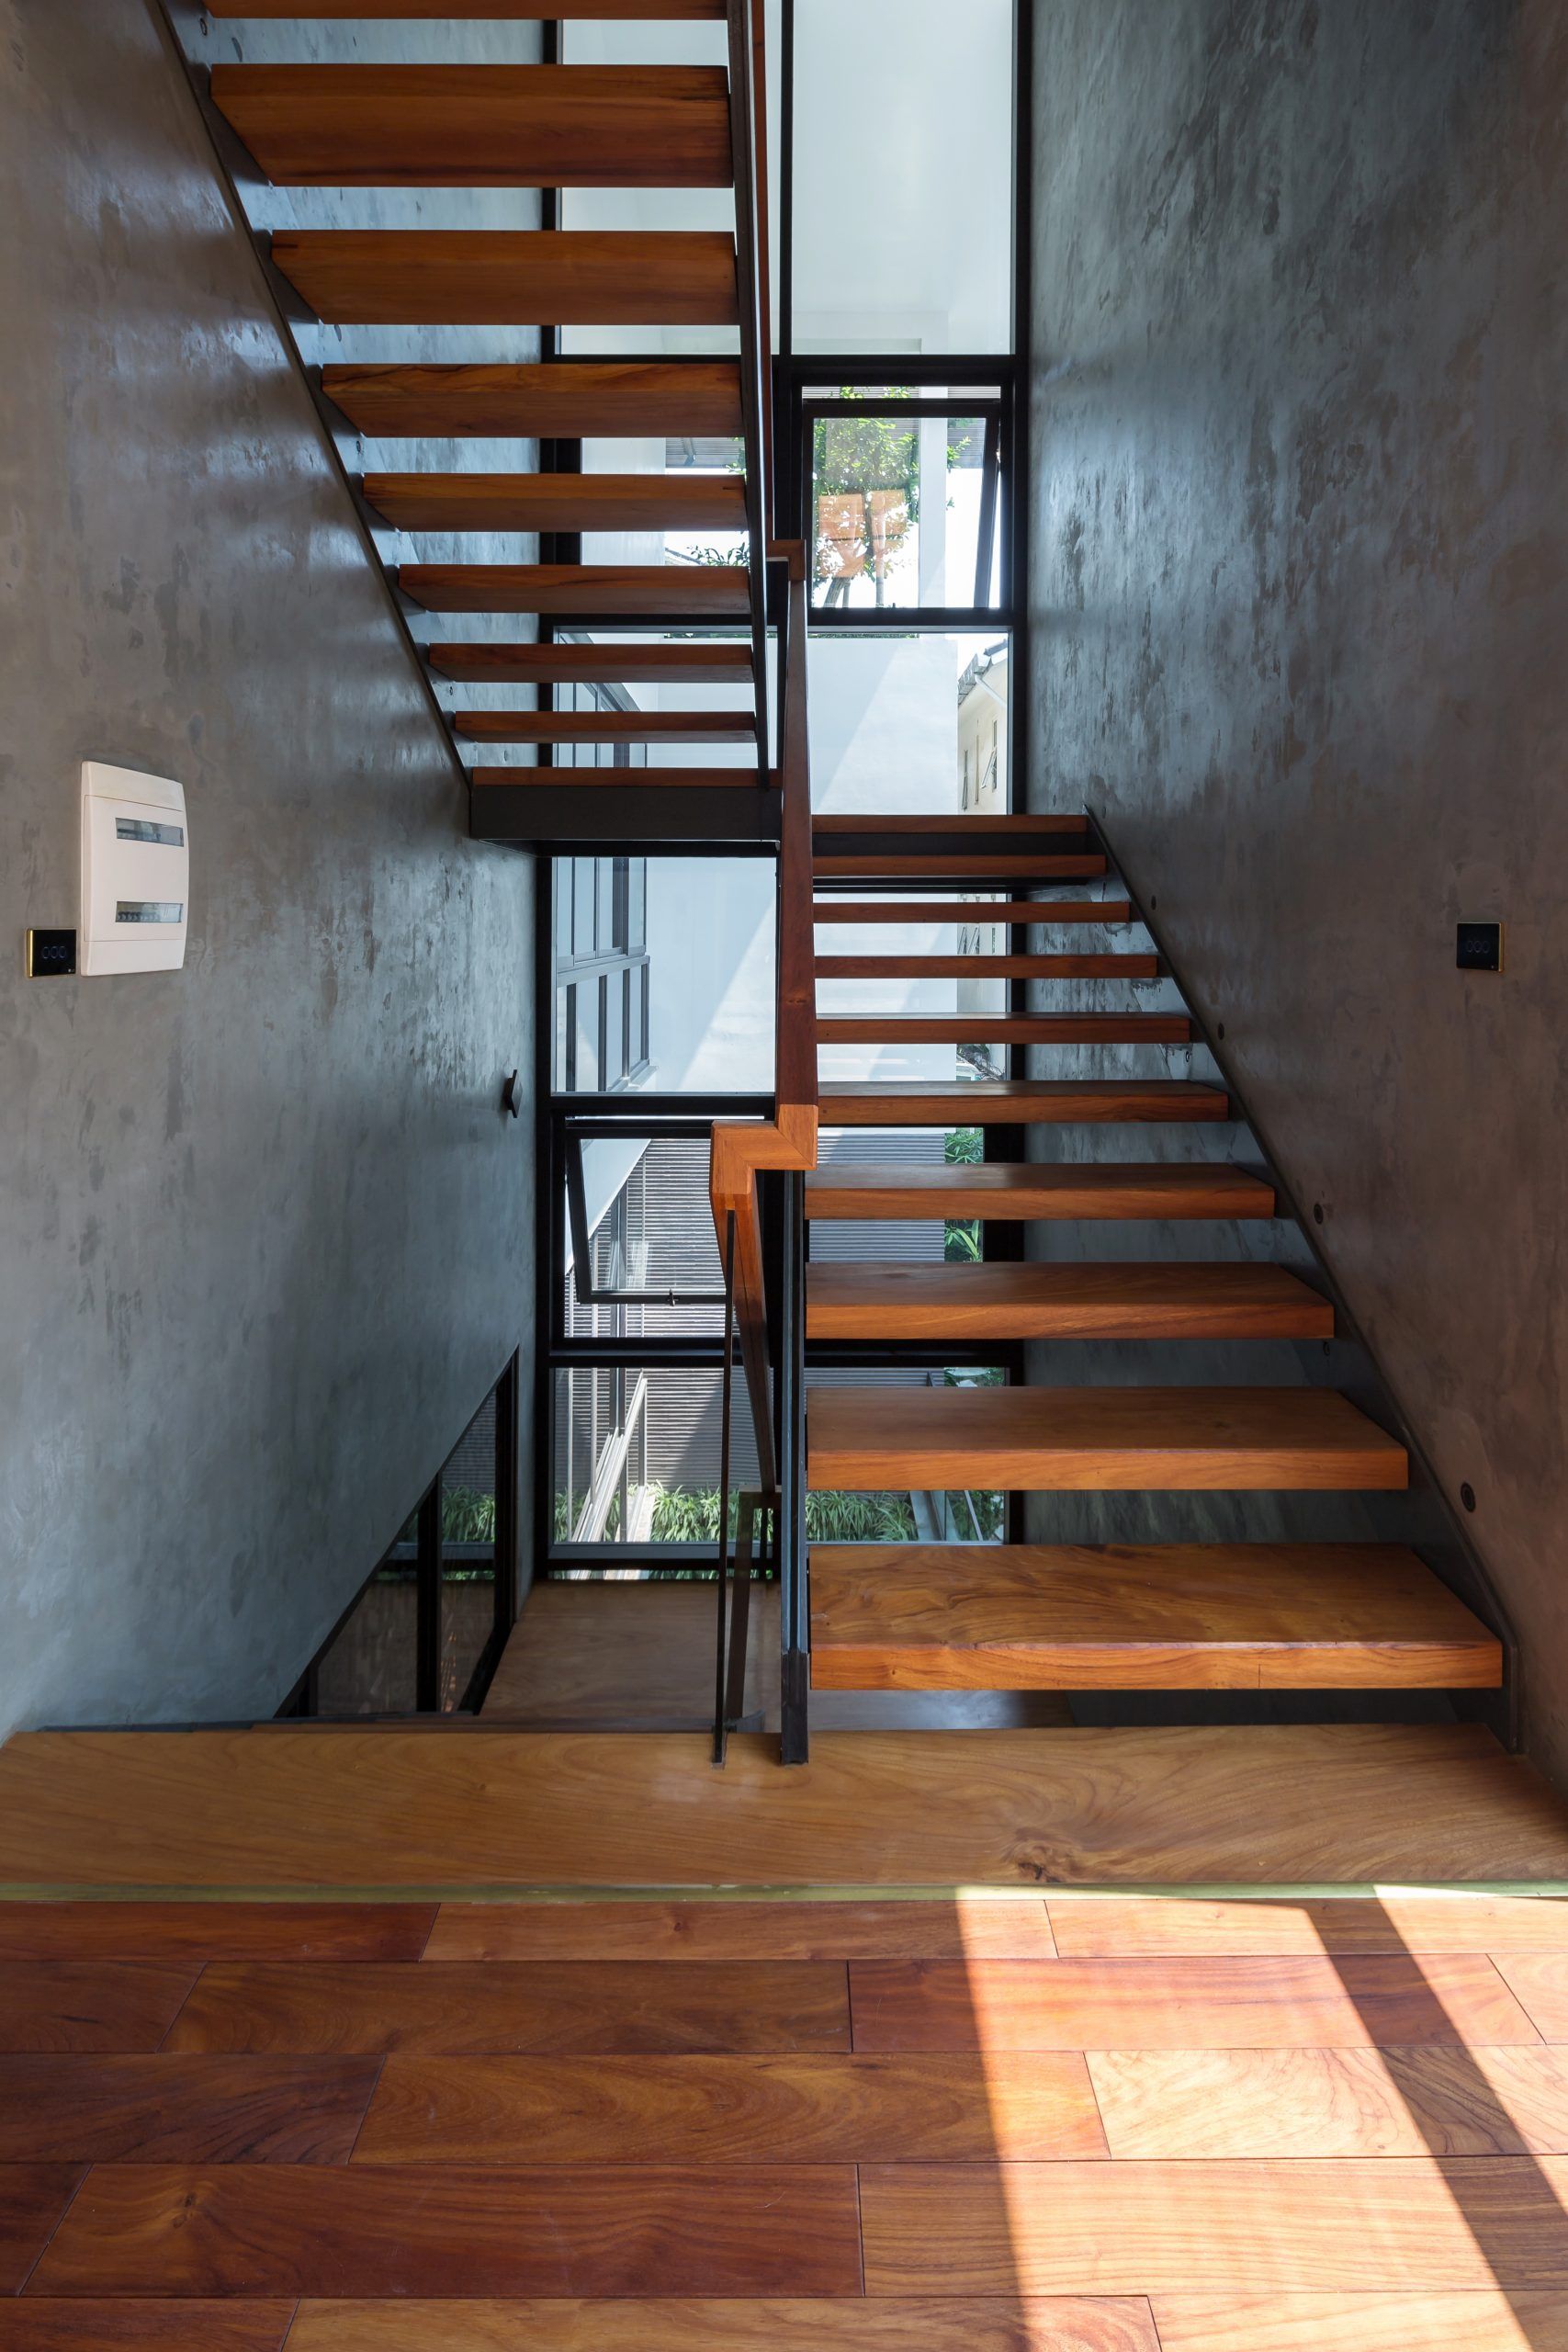 Vtrop.01 villa - Căn biệt thự miền nhiệt đới hiện đại | Vo+ Architect & Partners